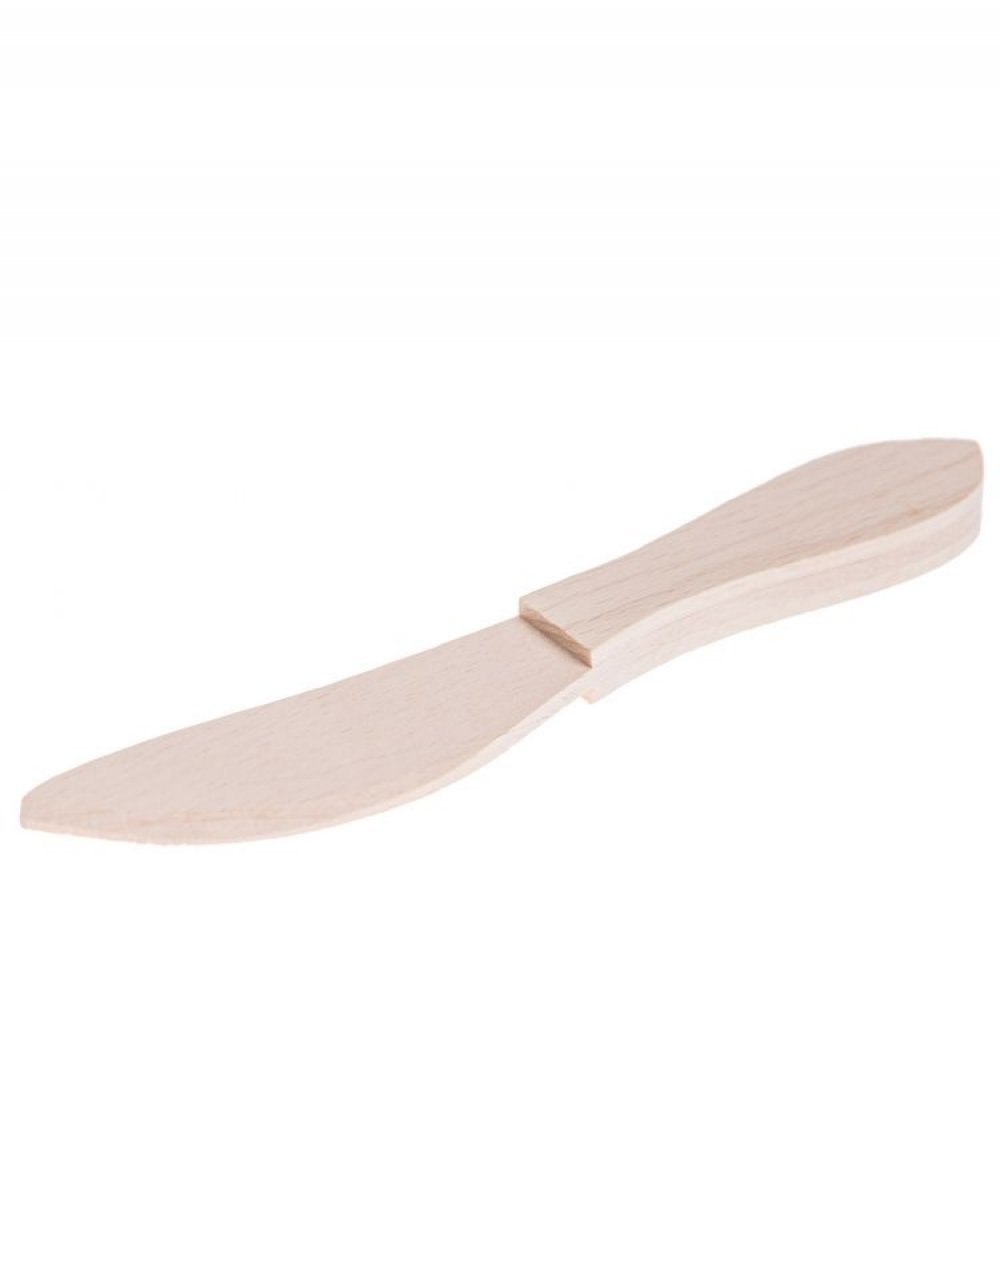 Dřevěný kuchyňský nůž k roztírání másla 19x3,5 cm